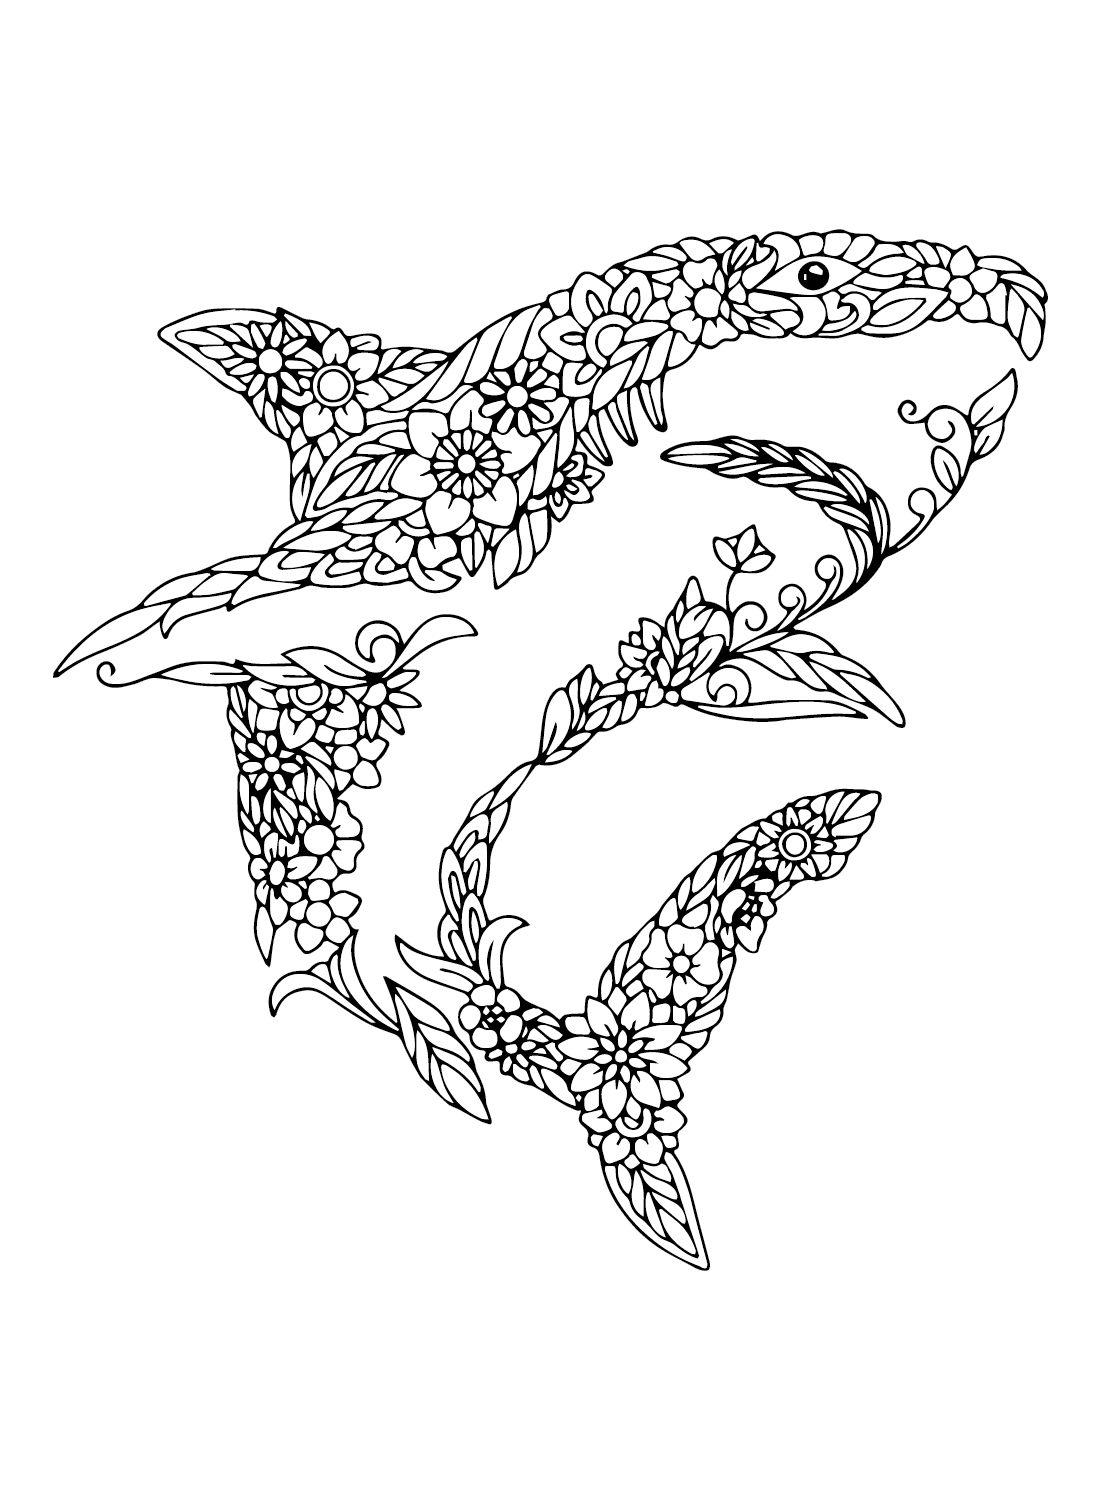 Imágenes del gran tiburón blanco del gran tiburón blanco